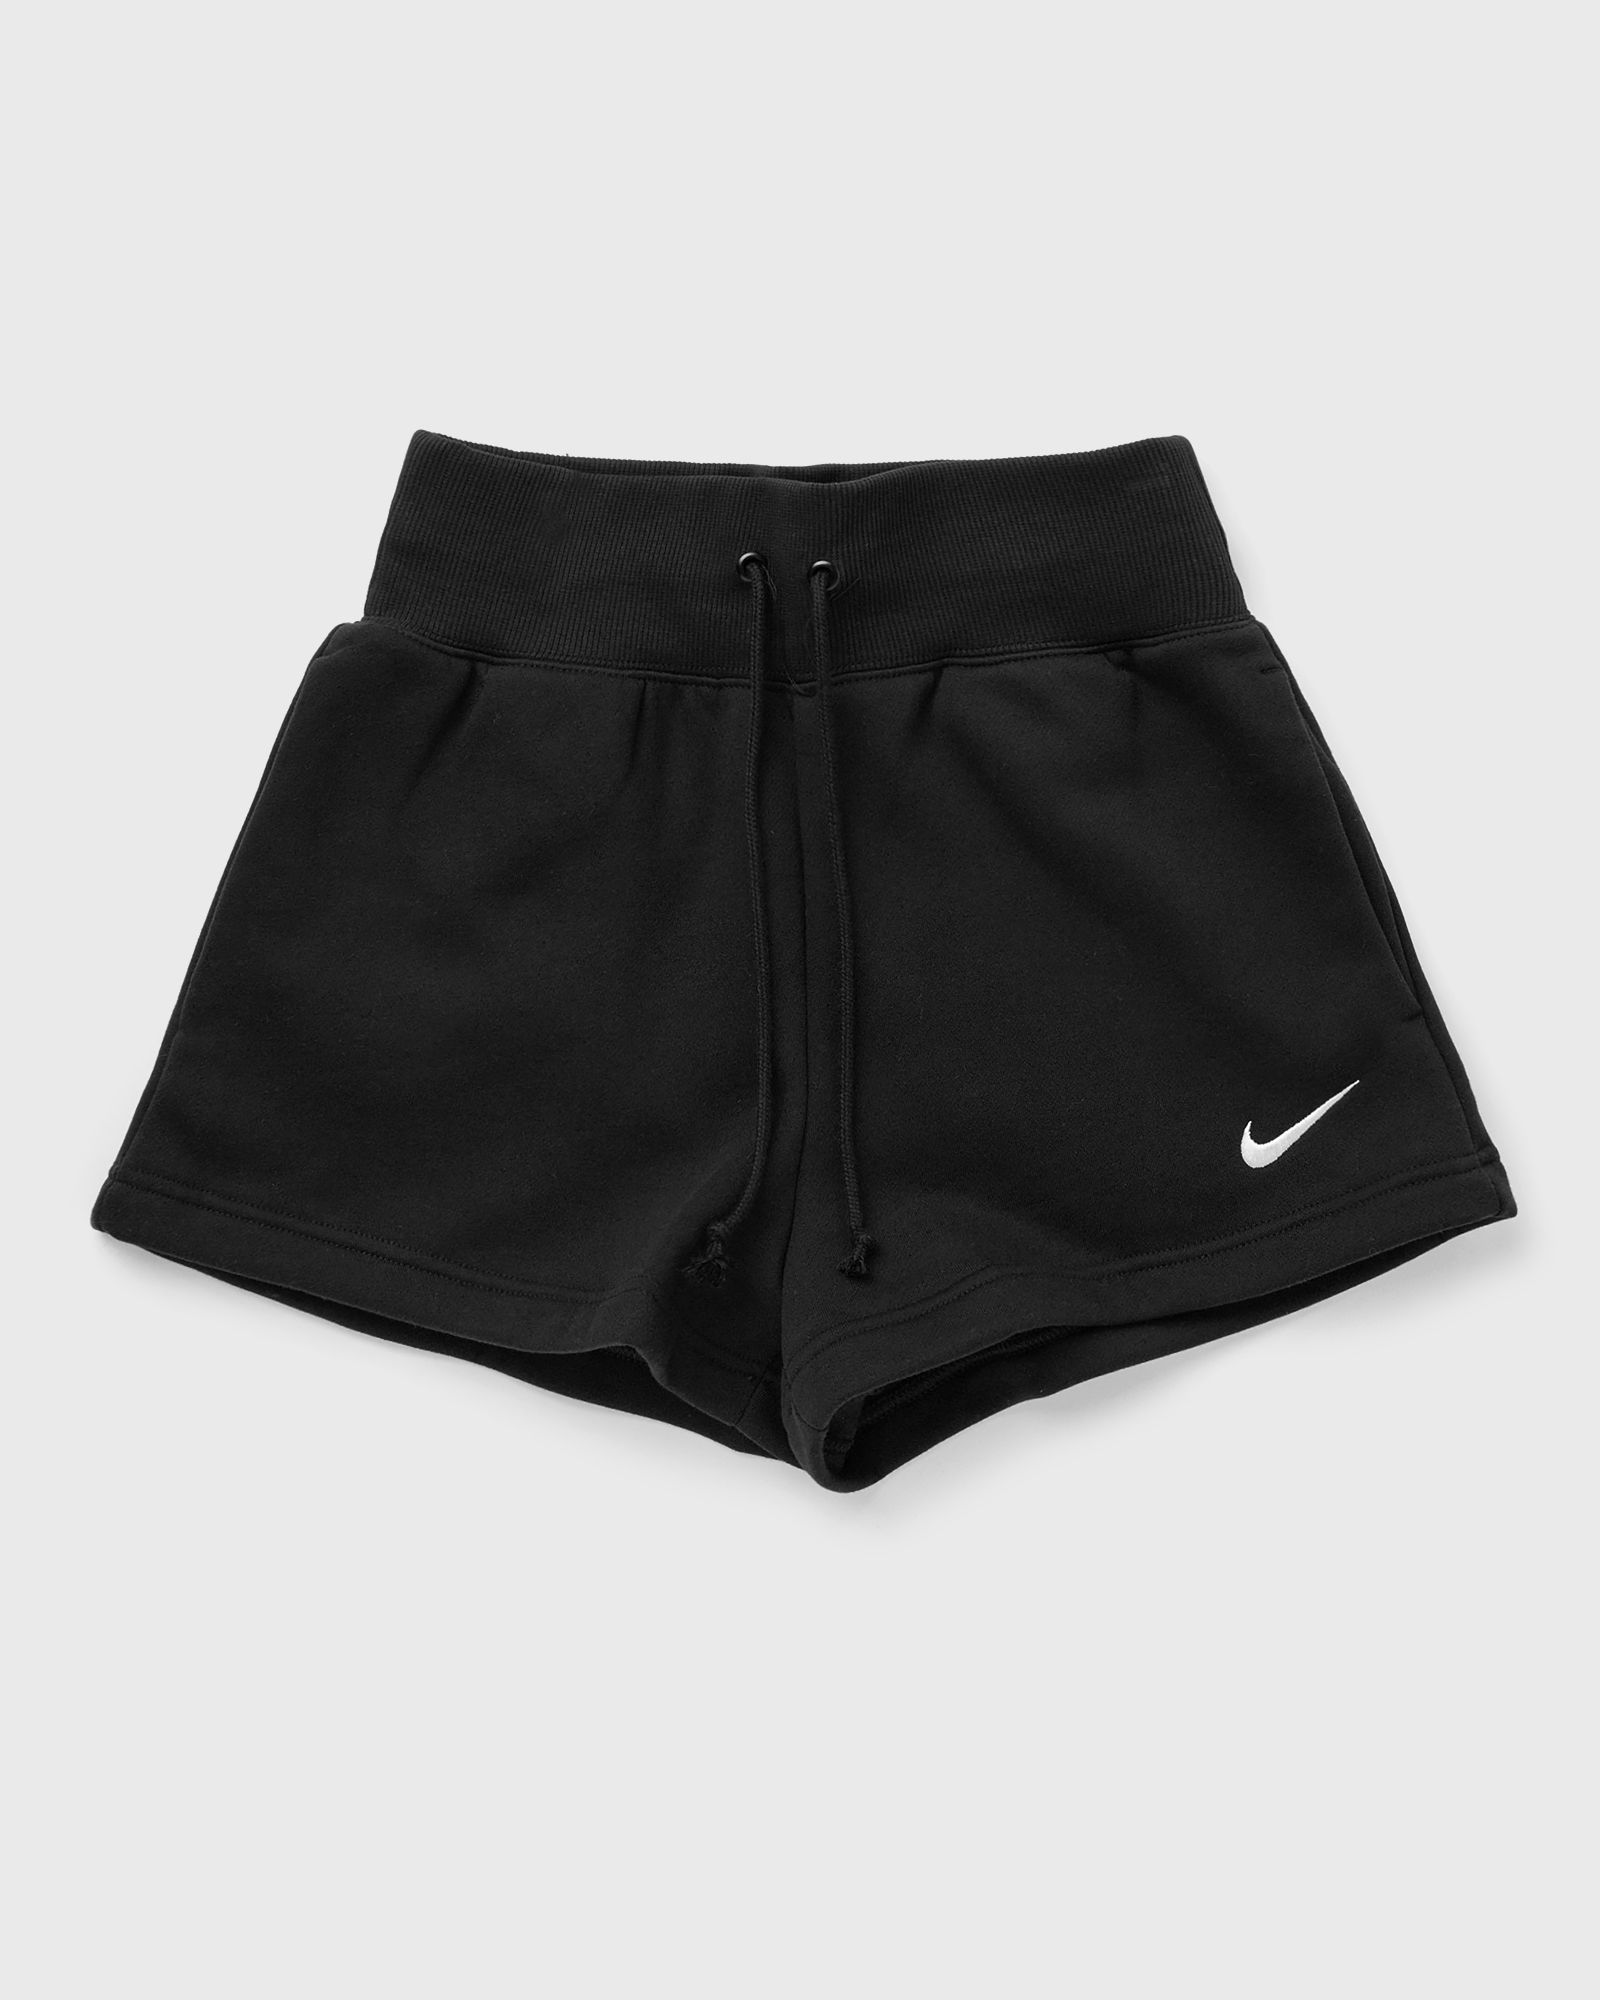 Nike - wmns nsw phnx flc hr short women sport & team shorts black in größe:xs